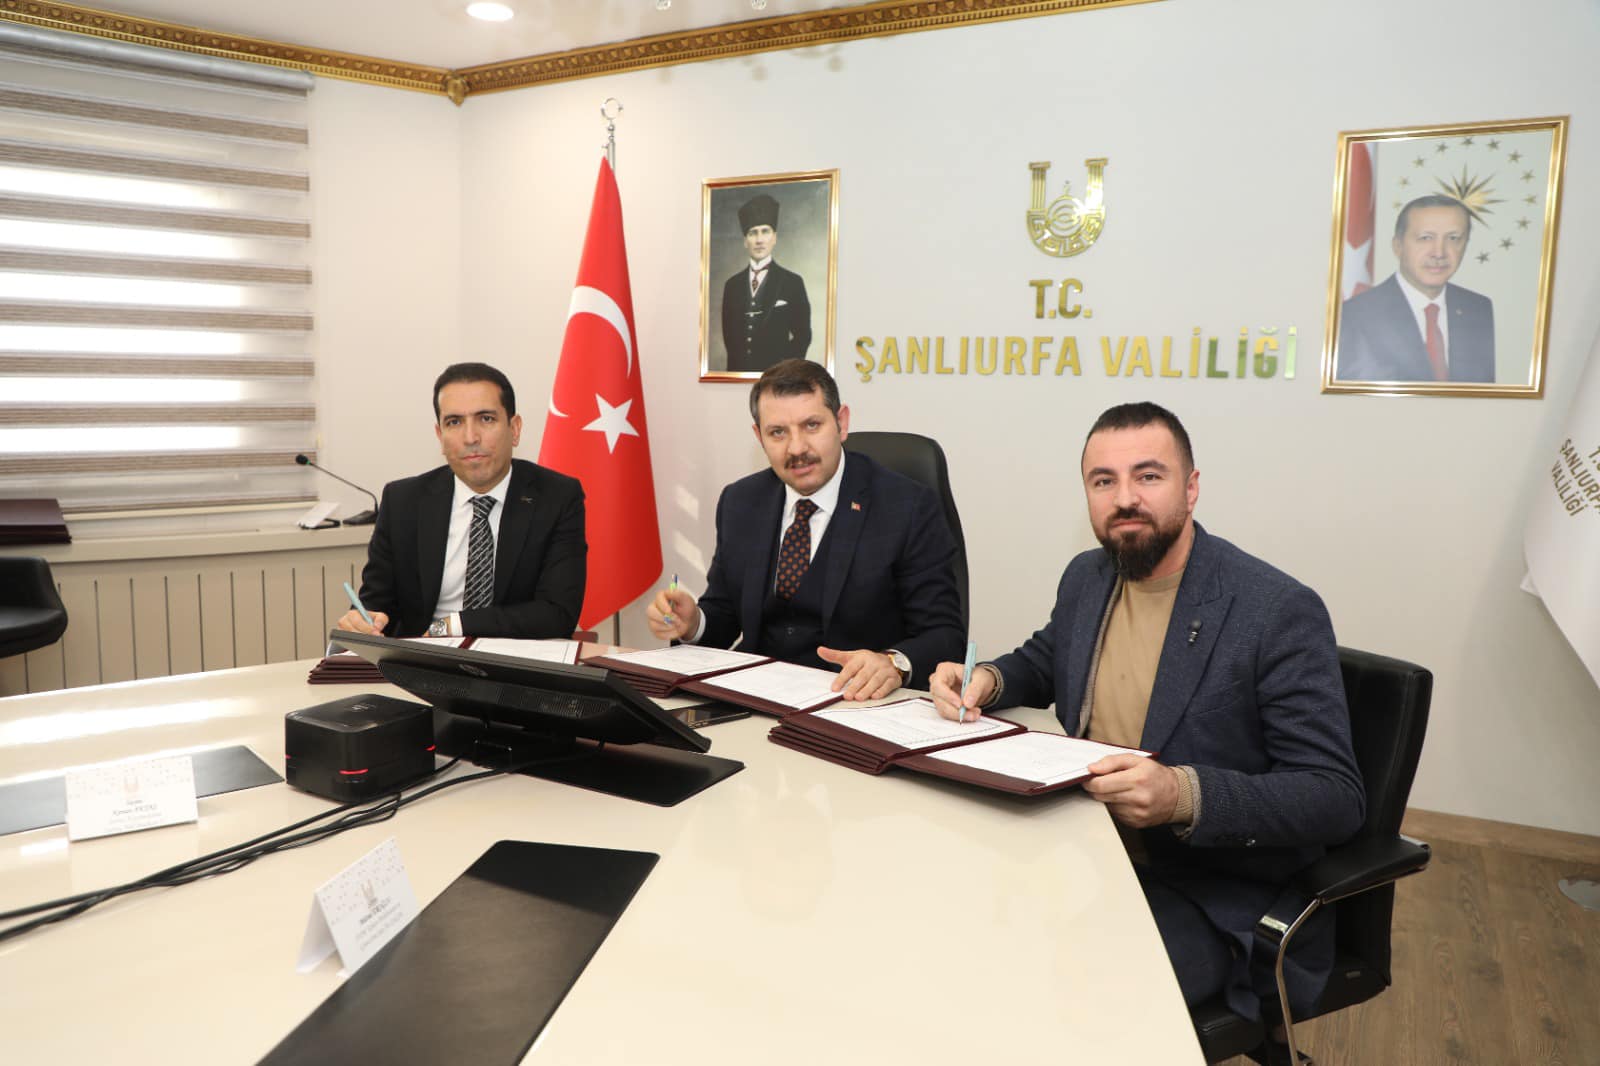 Suruç Belediyesine ait fabrikanın kiralama protokolü imzalandı Urfa Haber